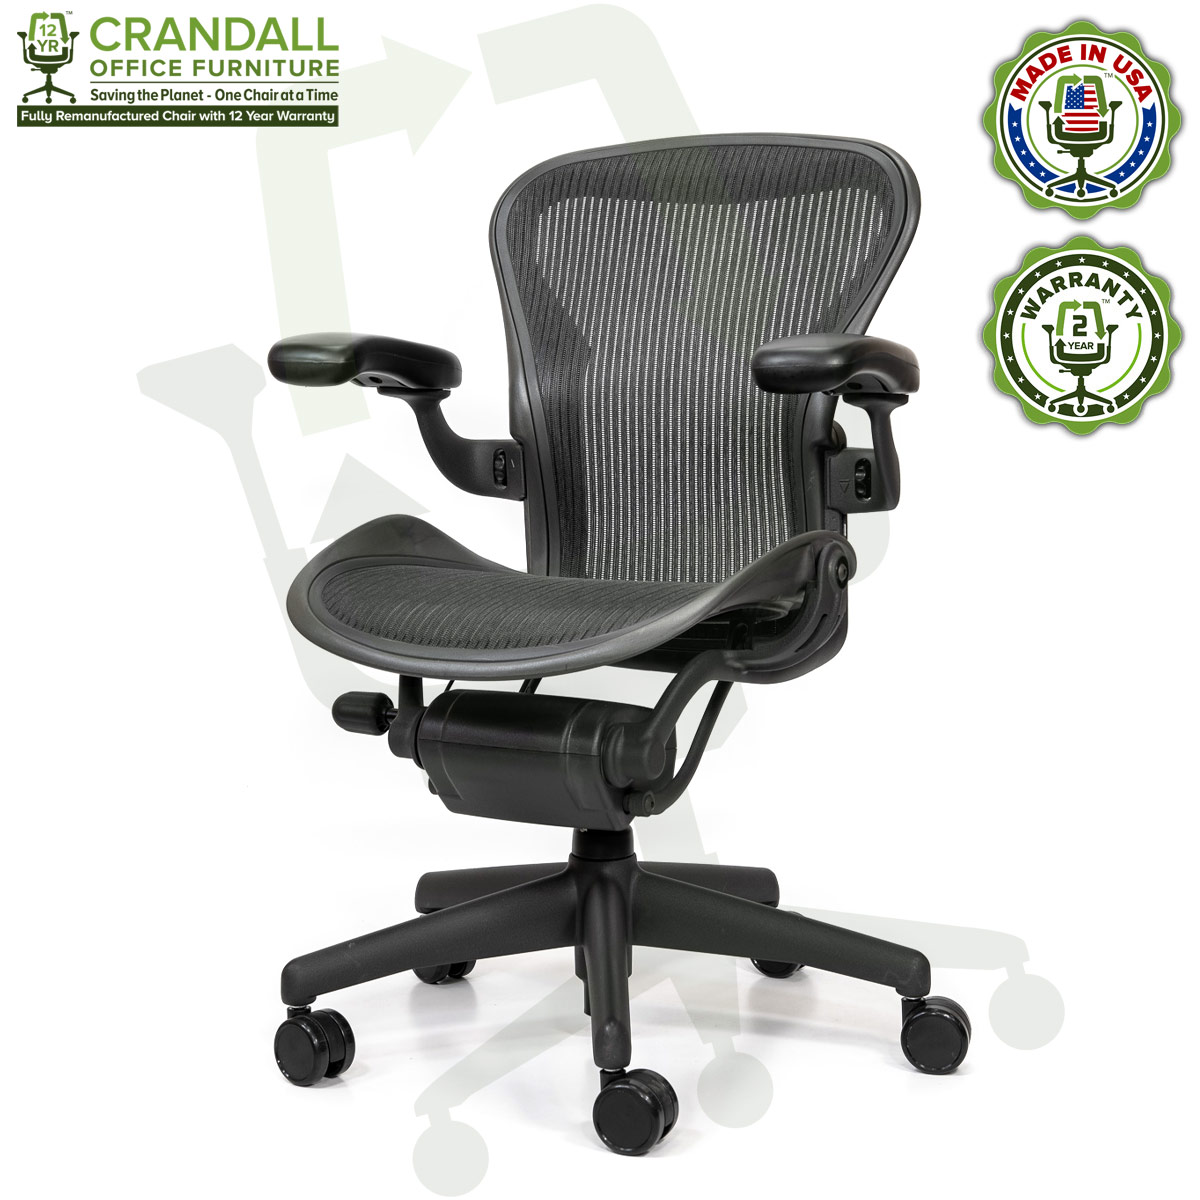 https://www.crandalloffice.com/wp-content/uploads/2020/09/Crandall-Office-Herman-Miller-Aeron-Chair-3D01-Size-A-0002-1.jpg